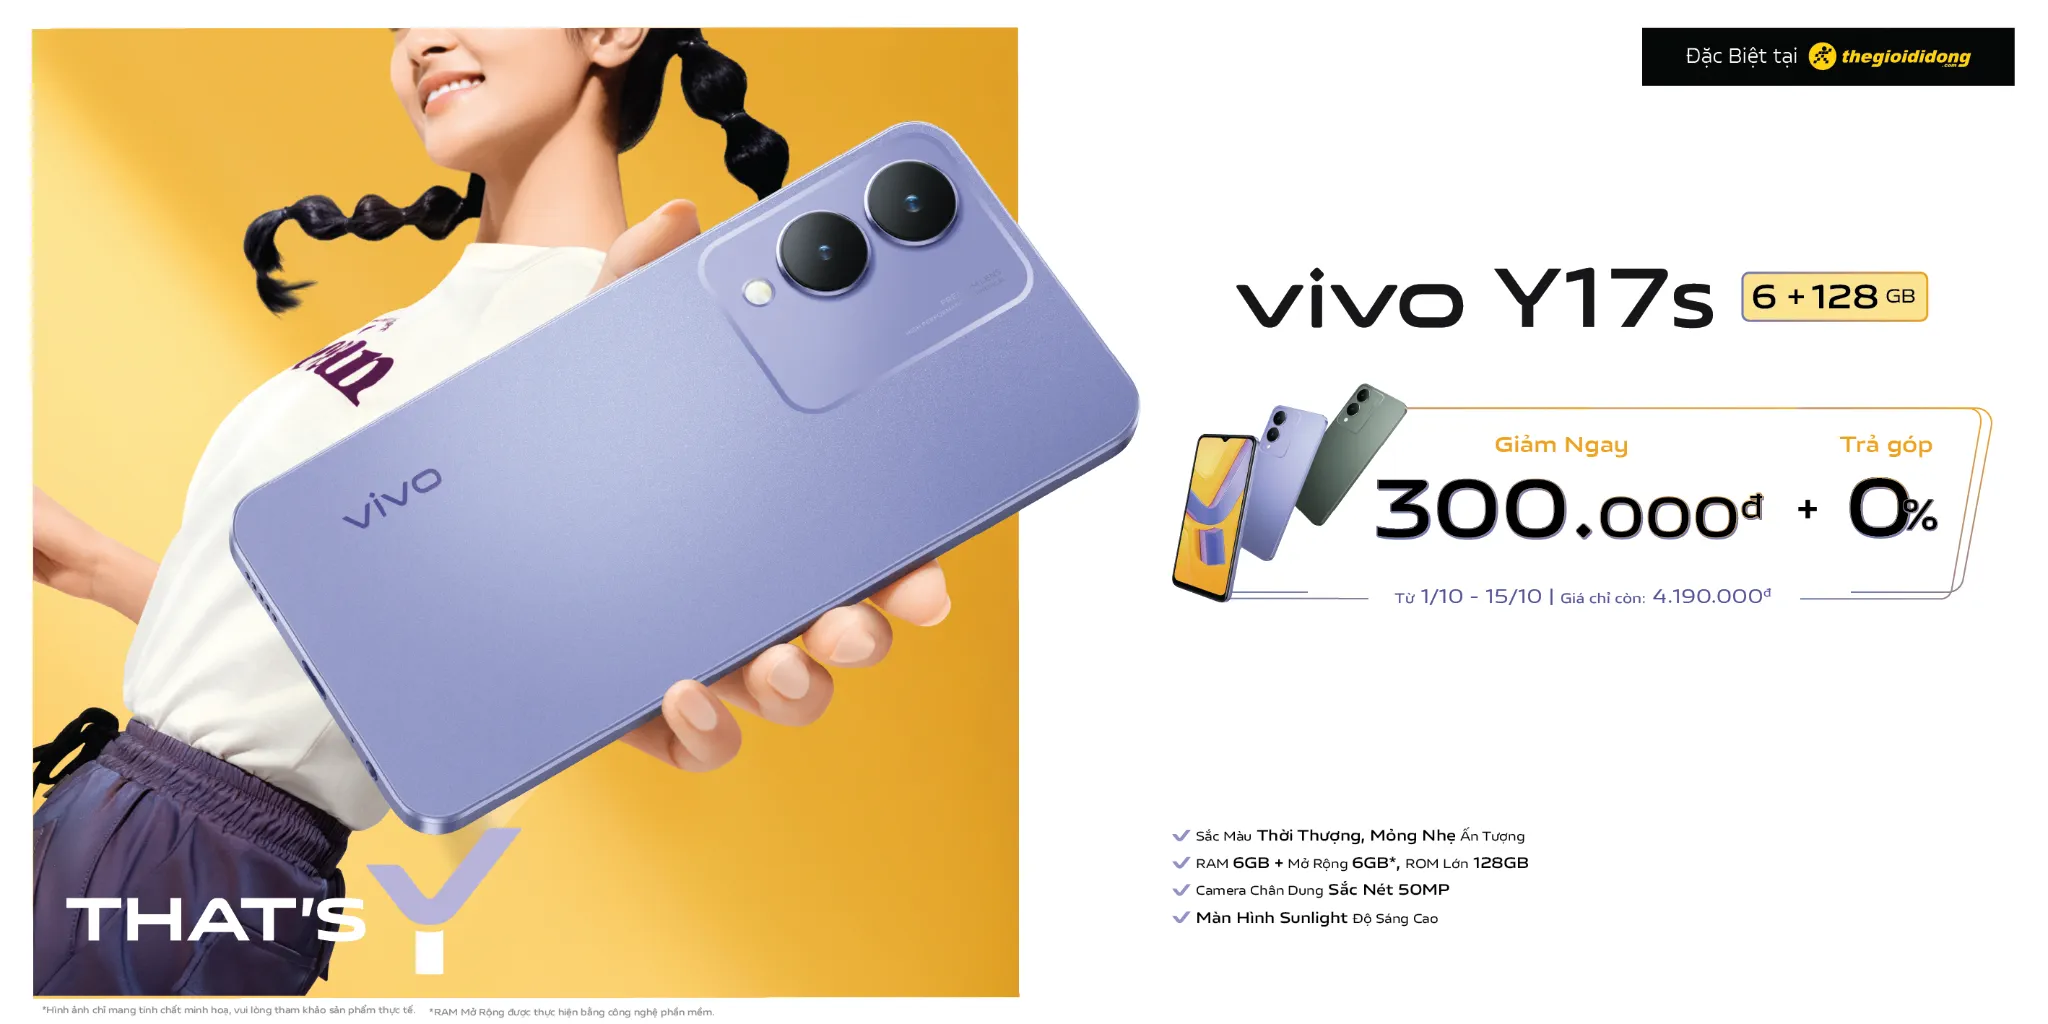 vivo Y17s - Smartphone 4 triệu sở hữu mọi công nghệ với mức giá tốt nhất